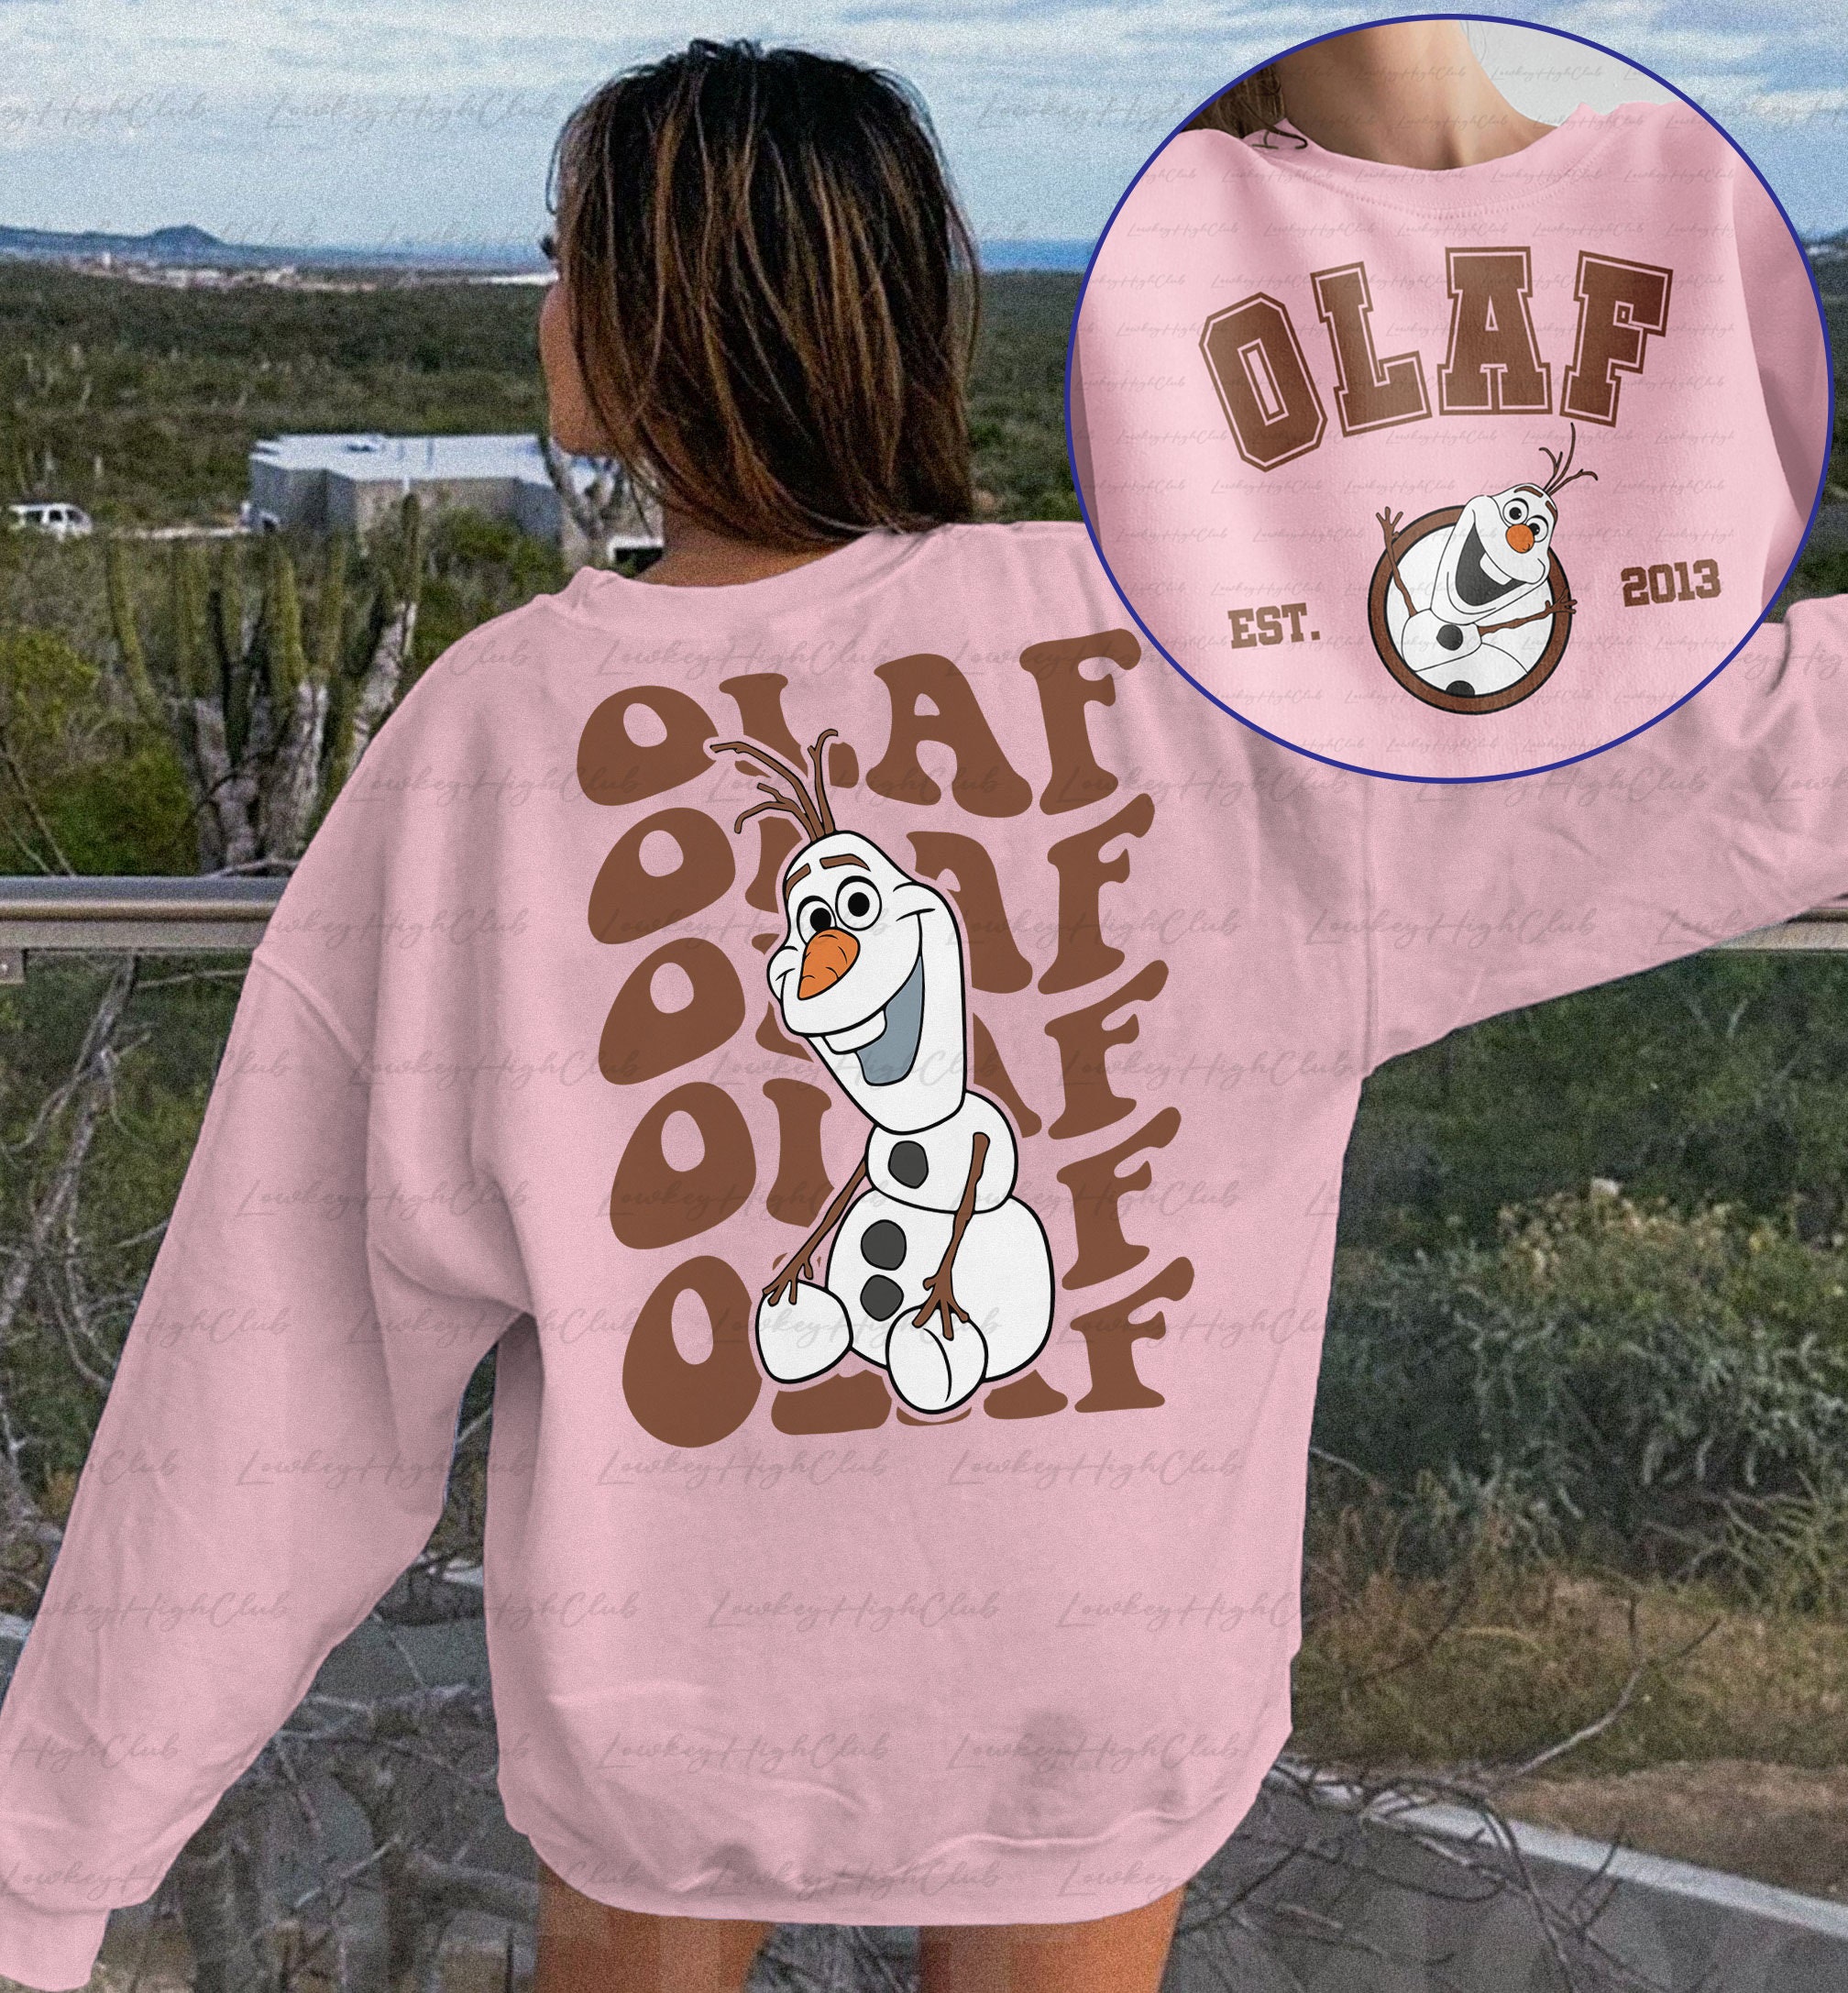 Olaf frozen sweater